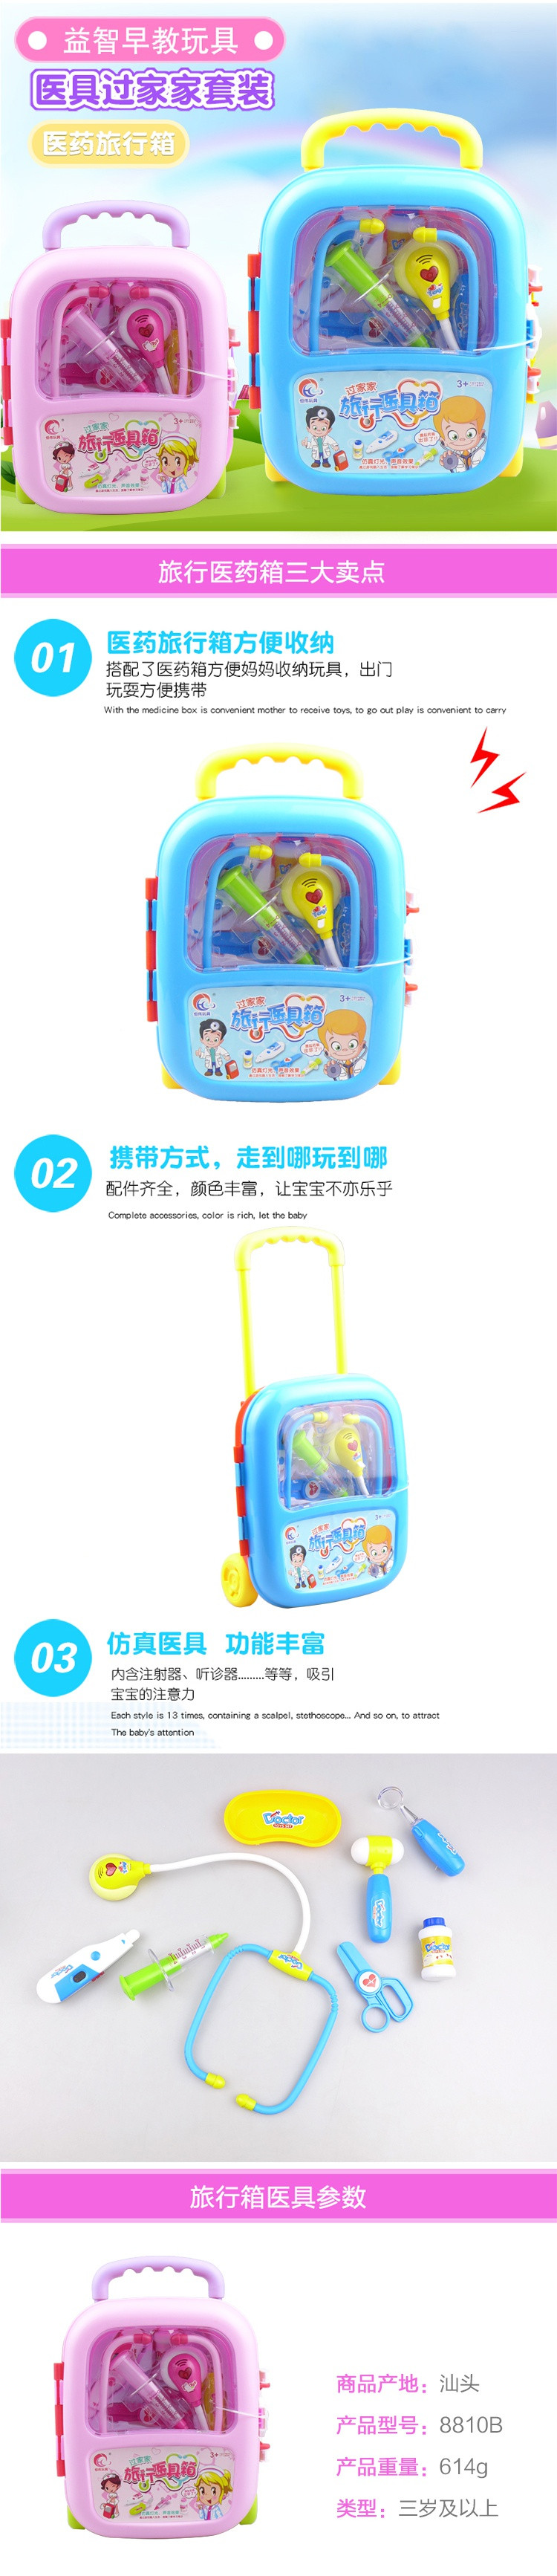 【邮乐新乡馆】旅行医具箱儿童过家家玩具 亲子互动玩具